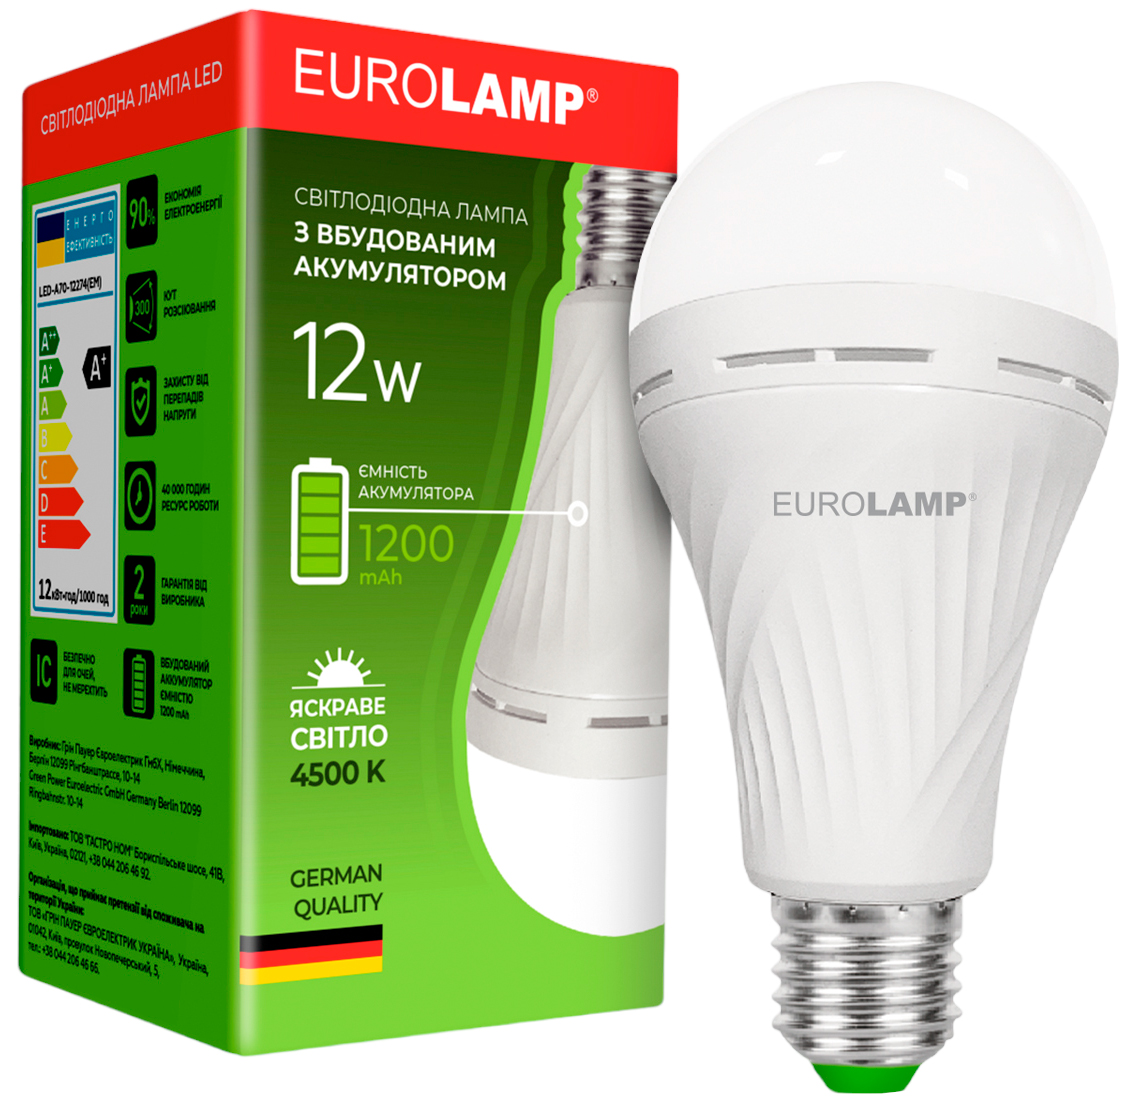 Купить светодиодная лампа eurolamp мощностью 12 вт Eurolamp A70 12W 4500K 220V E27 (LED-A70-12274(EM) в Киеве